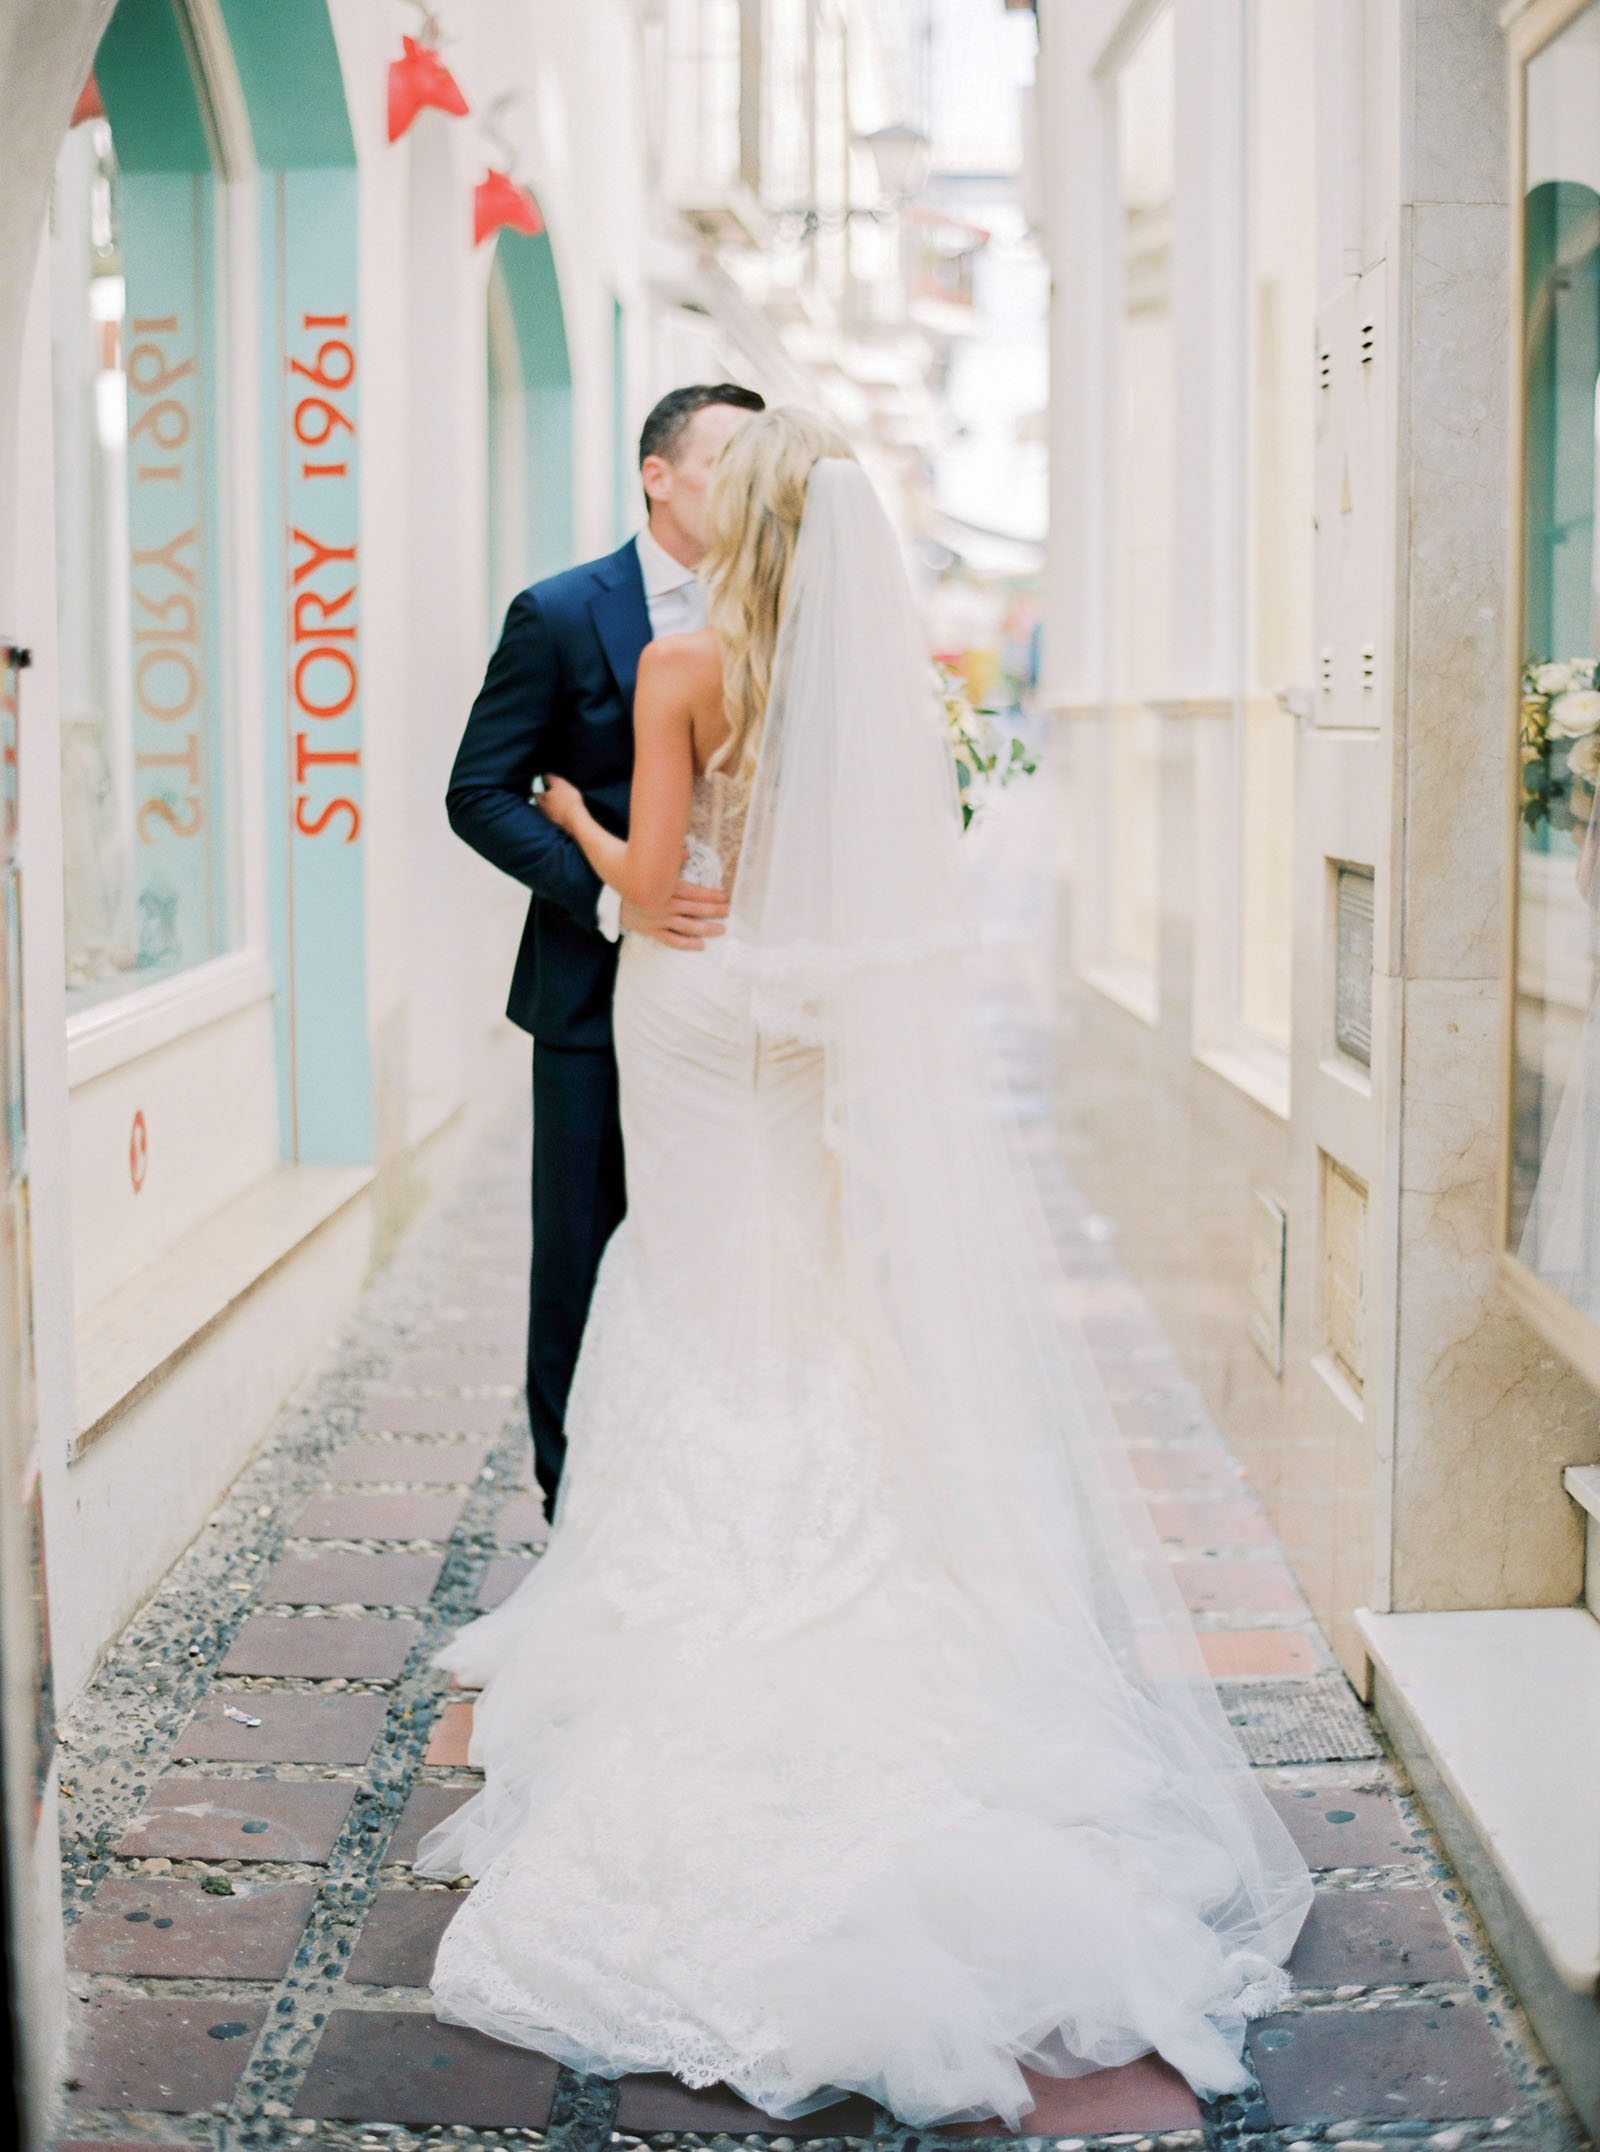 Beautiful wedding in Marbella, Spain at Finca la Concepcion - Krmorenophoto